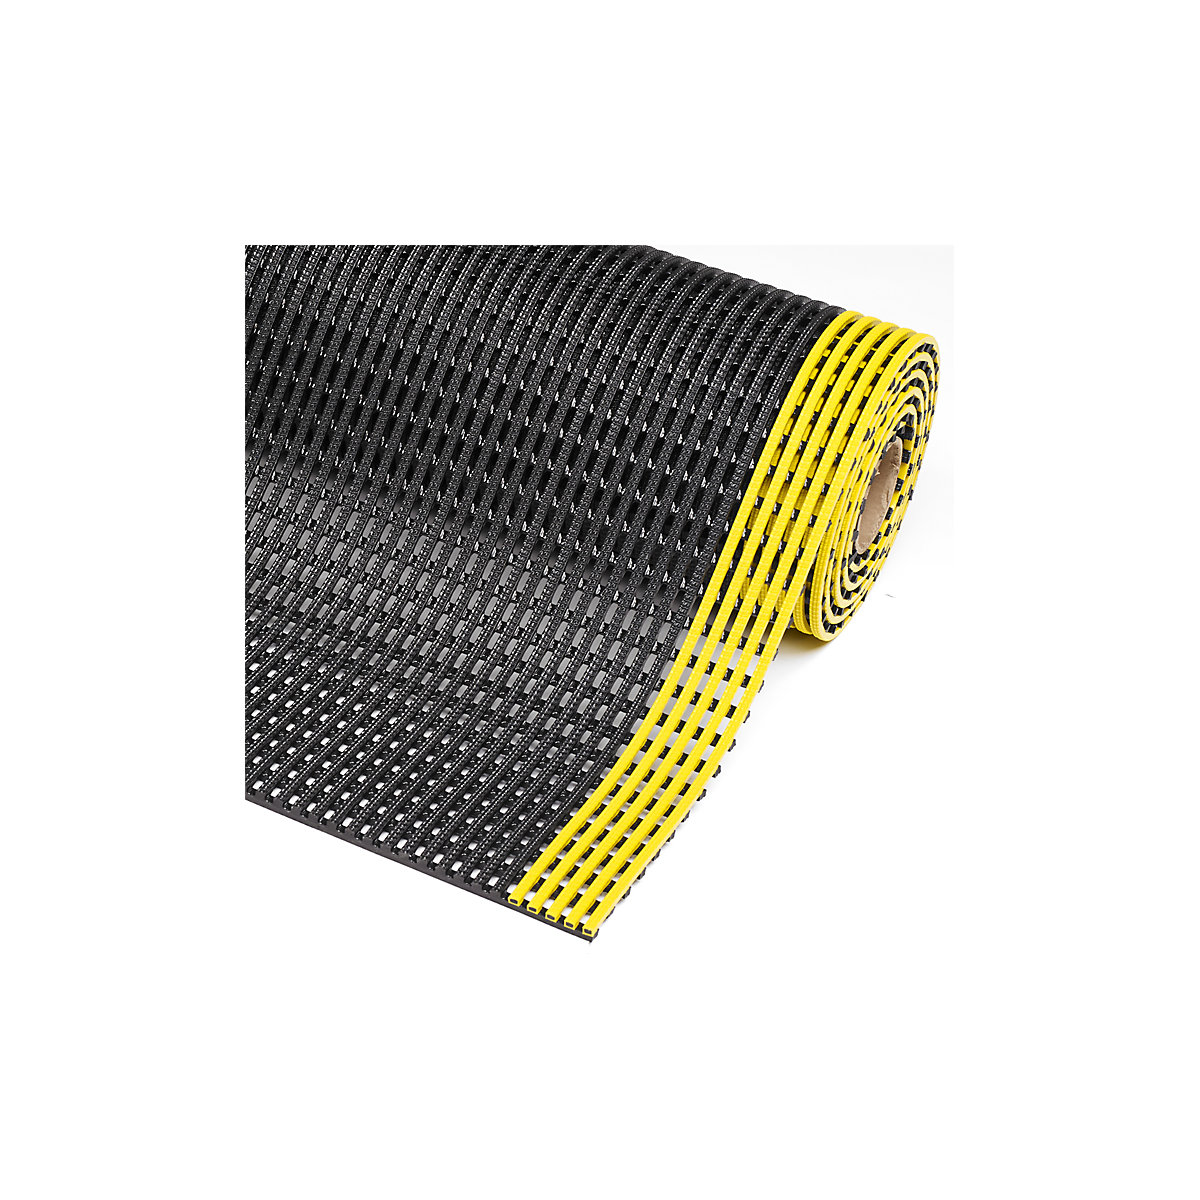 Mrežasta prostirka Flexdek™ – NOTRAX, širina 1200 mm, po dužnom metru, u crnoj/žutoj boji-2